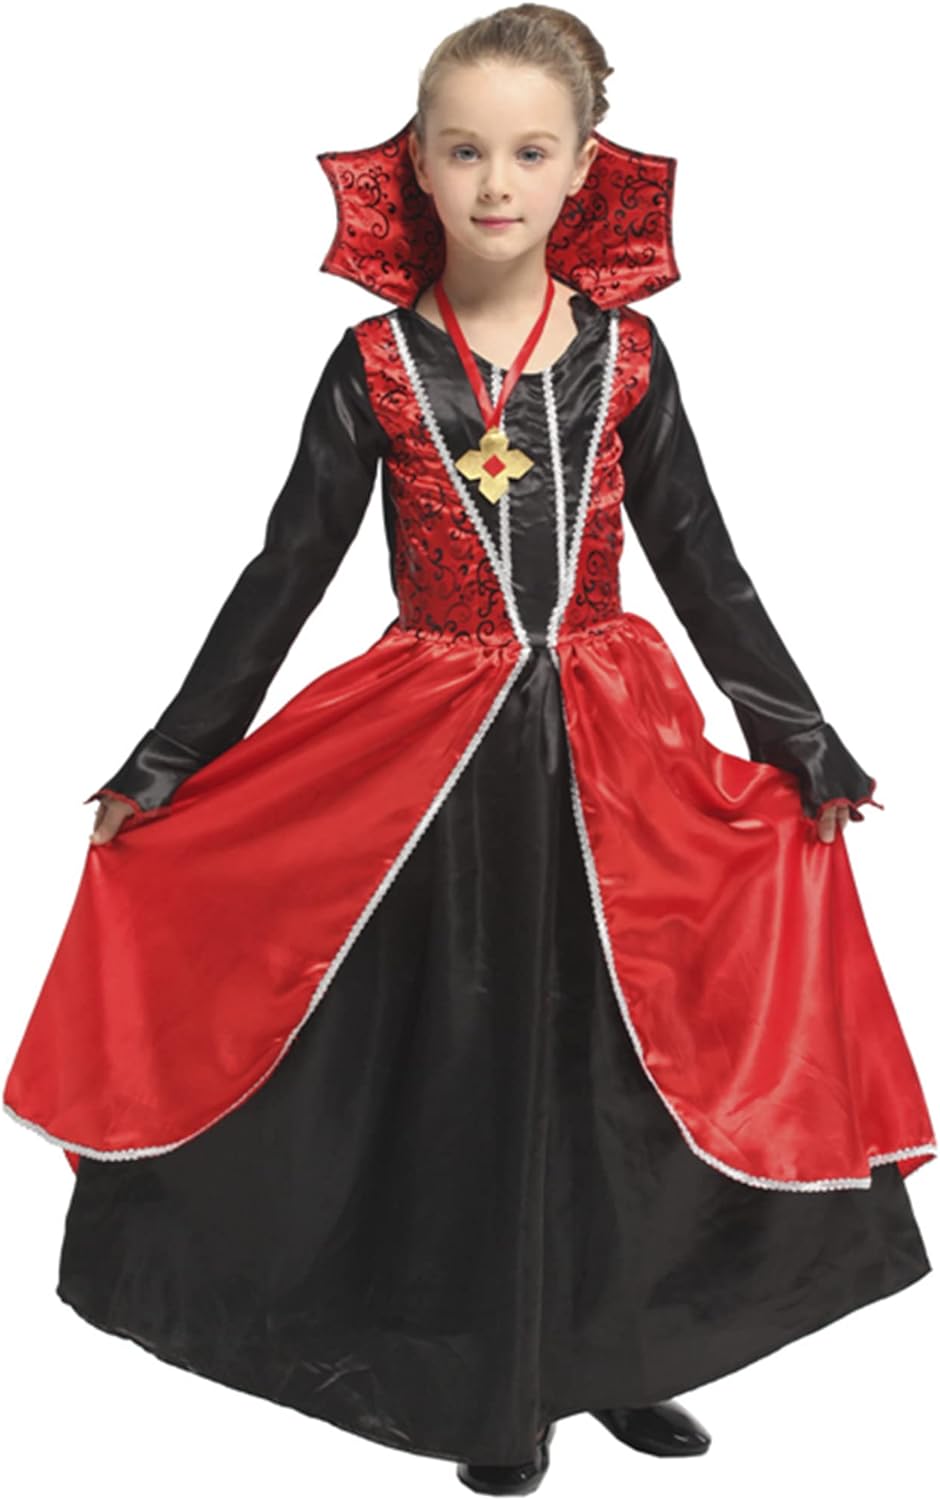 Vampire Costume for Girls Vampire Costume,Kids Vampire Costume Size Medium